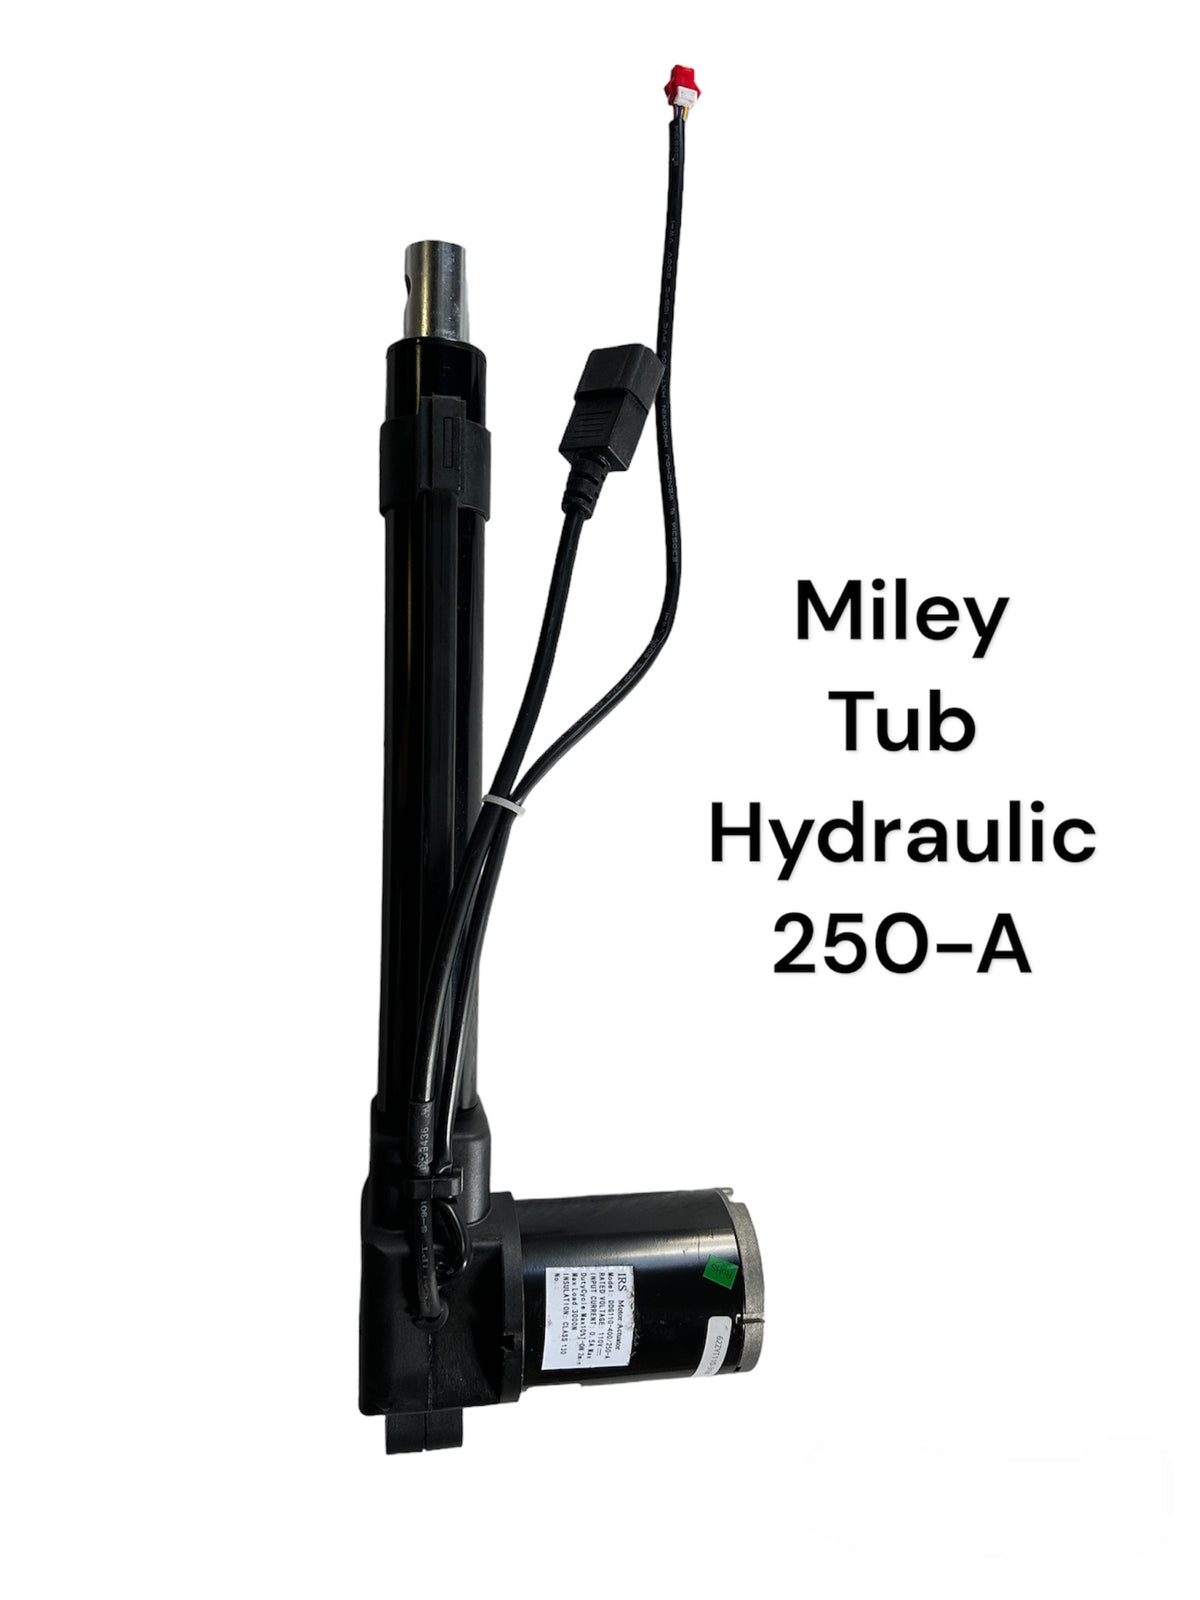 Miley Tub Hydraulic (250-A)